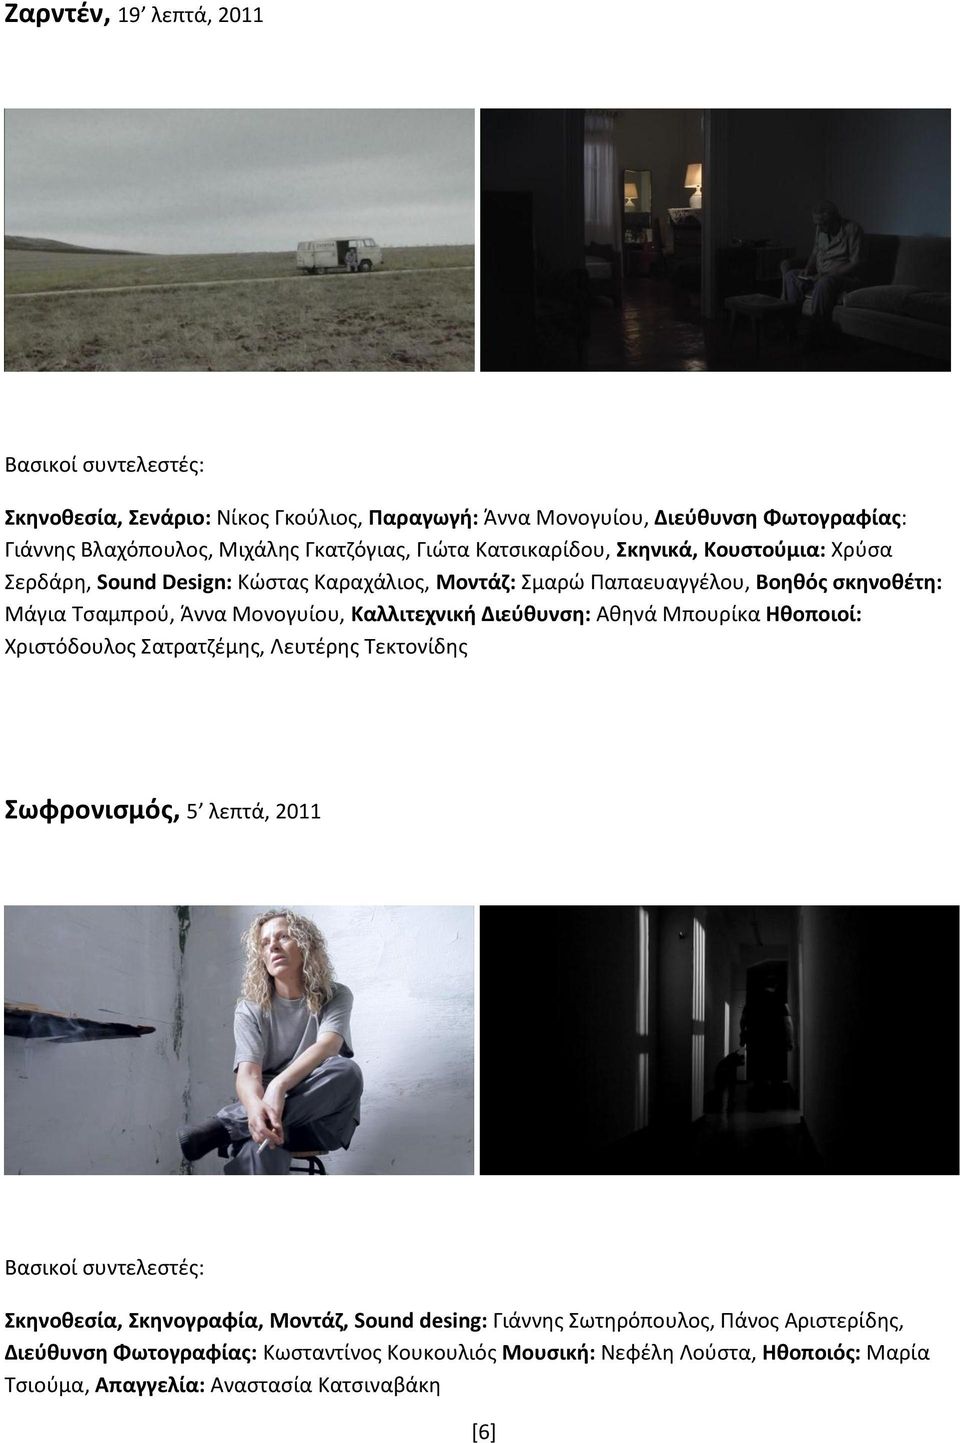 Καλλιτεχνική Διεύθυνση: Αθηνά Μπουρίκα Ηθοποιοί: Χριστόδουλος Σατρατζέμης, Λευτέρης Τεκτονίδης Σωφρονισμός, 5 λεπτά, 2011 Σκηνοθεσία, Σκηνογραφία, Μοντάζ, Sound